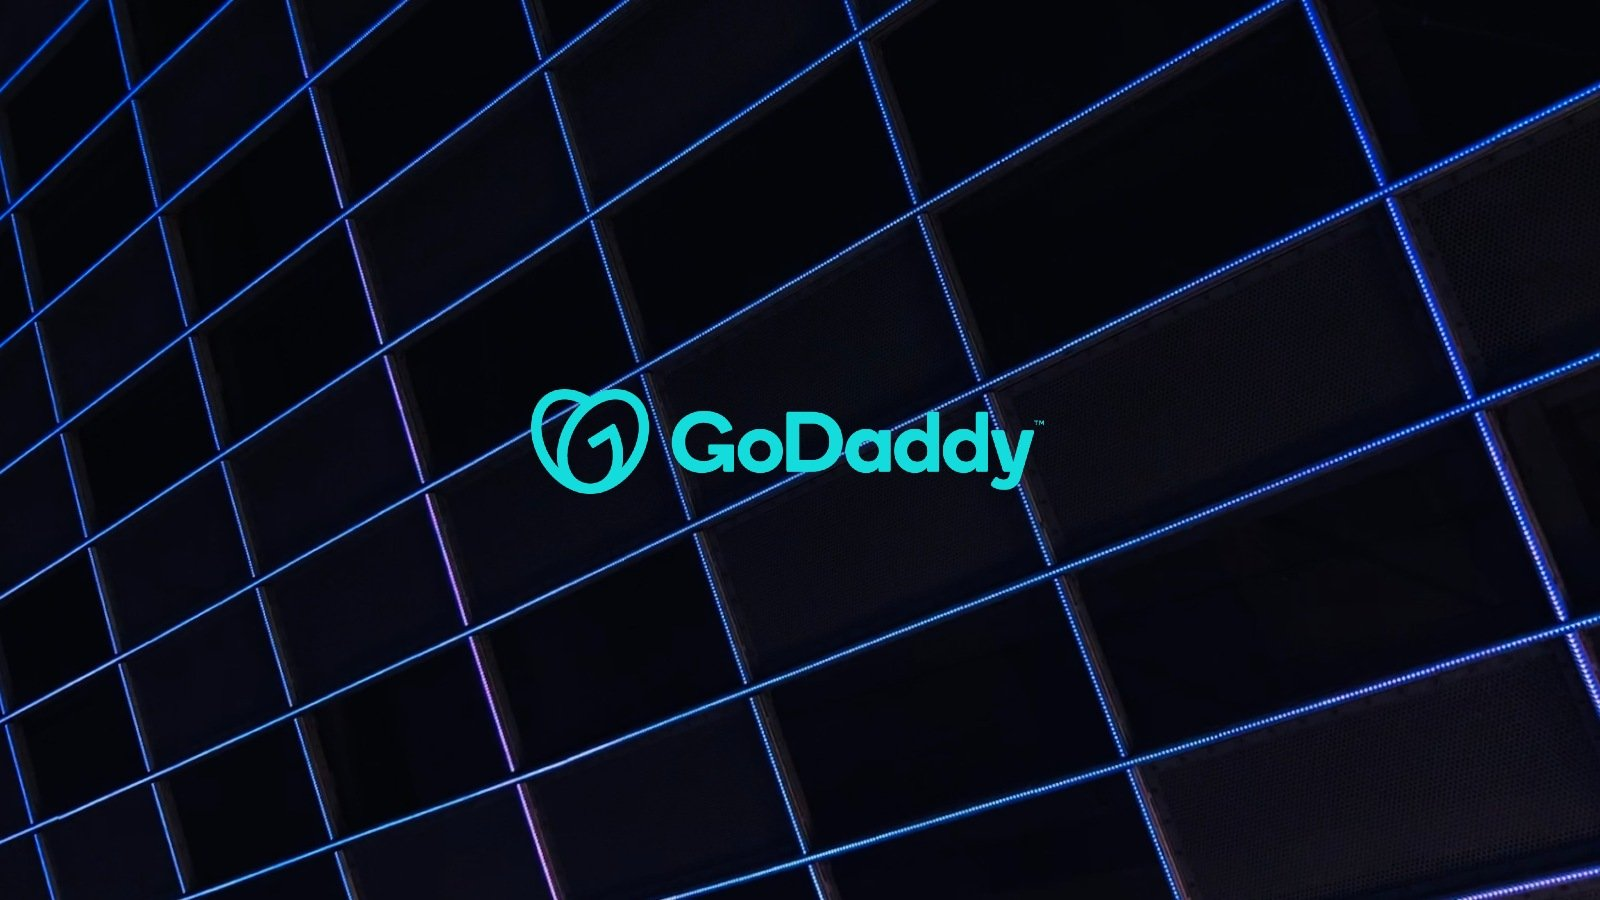 GoDaddy 源代码失窃服务器被安装恶意程序